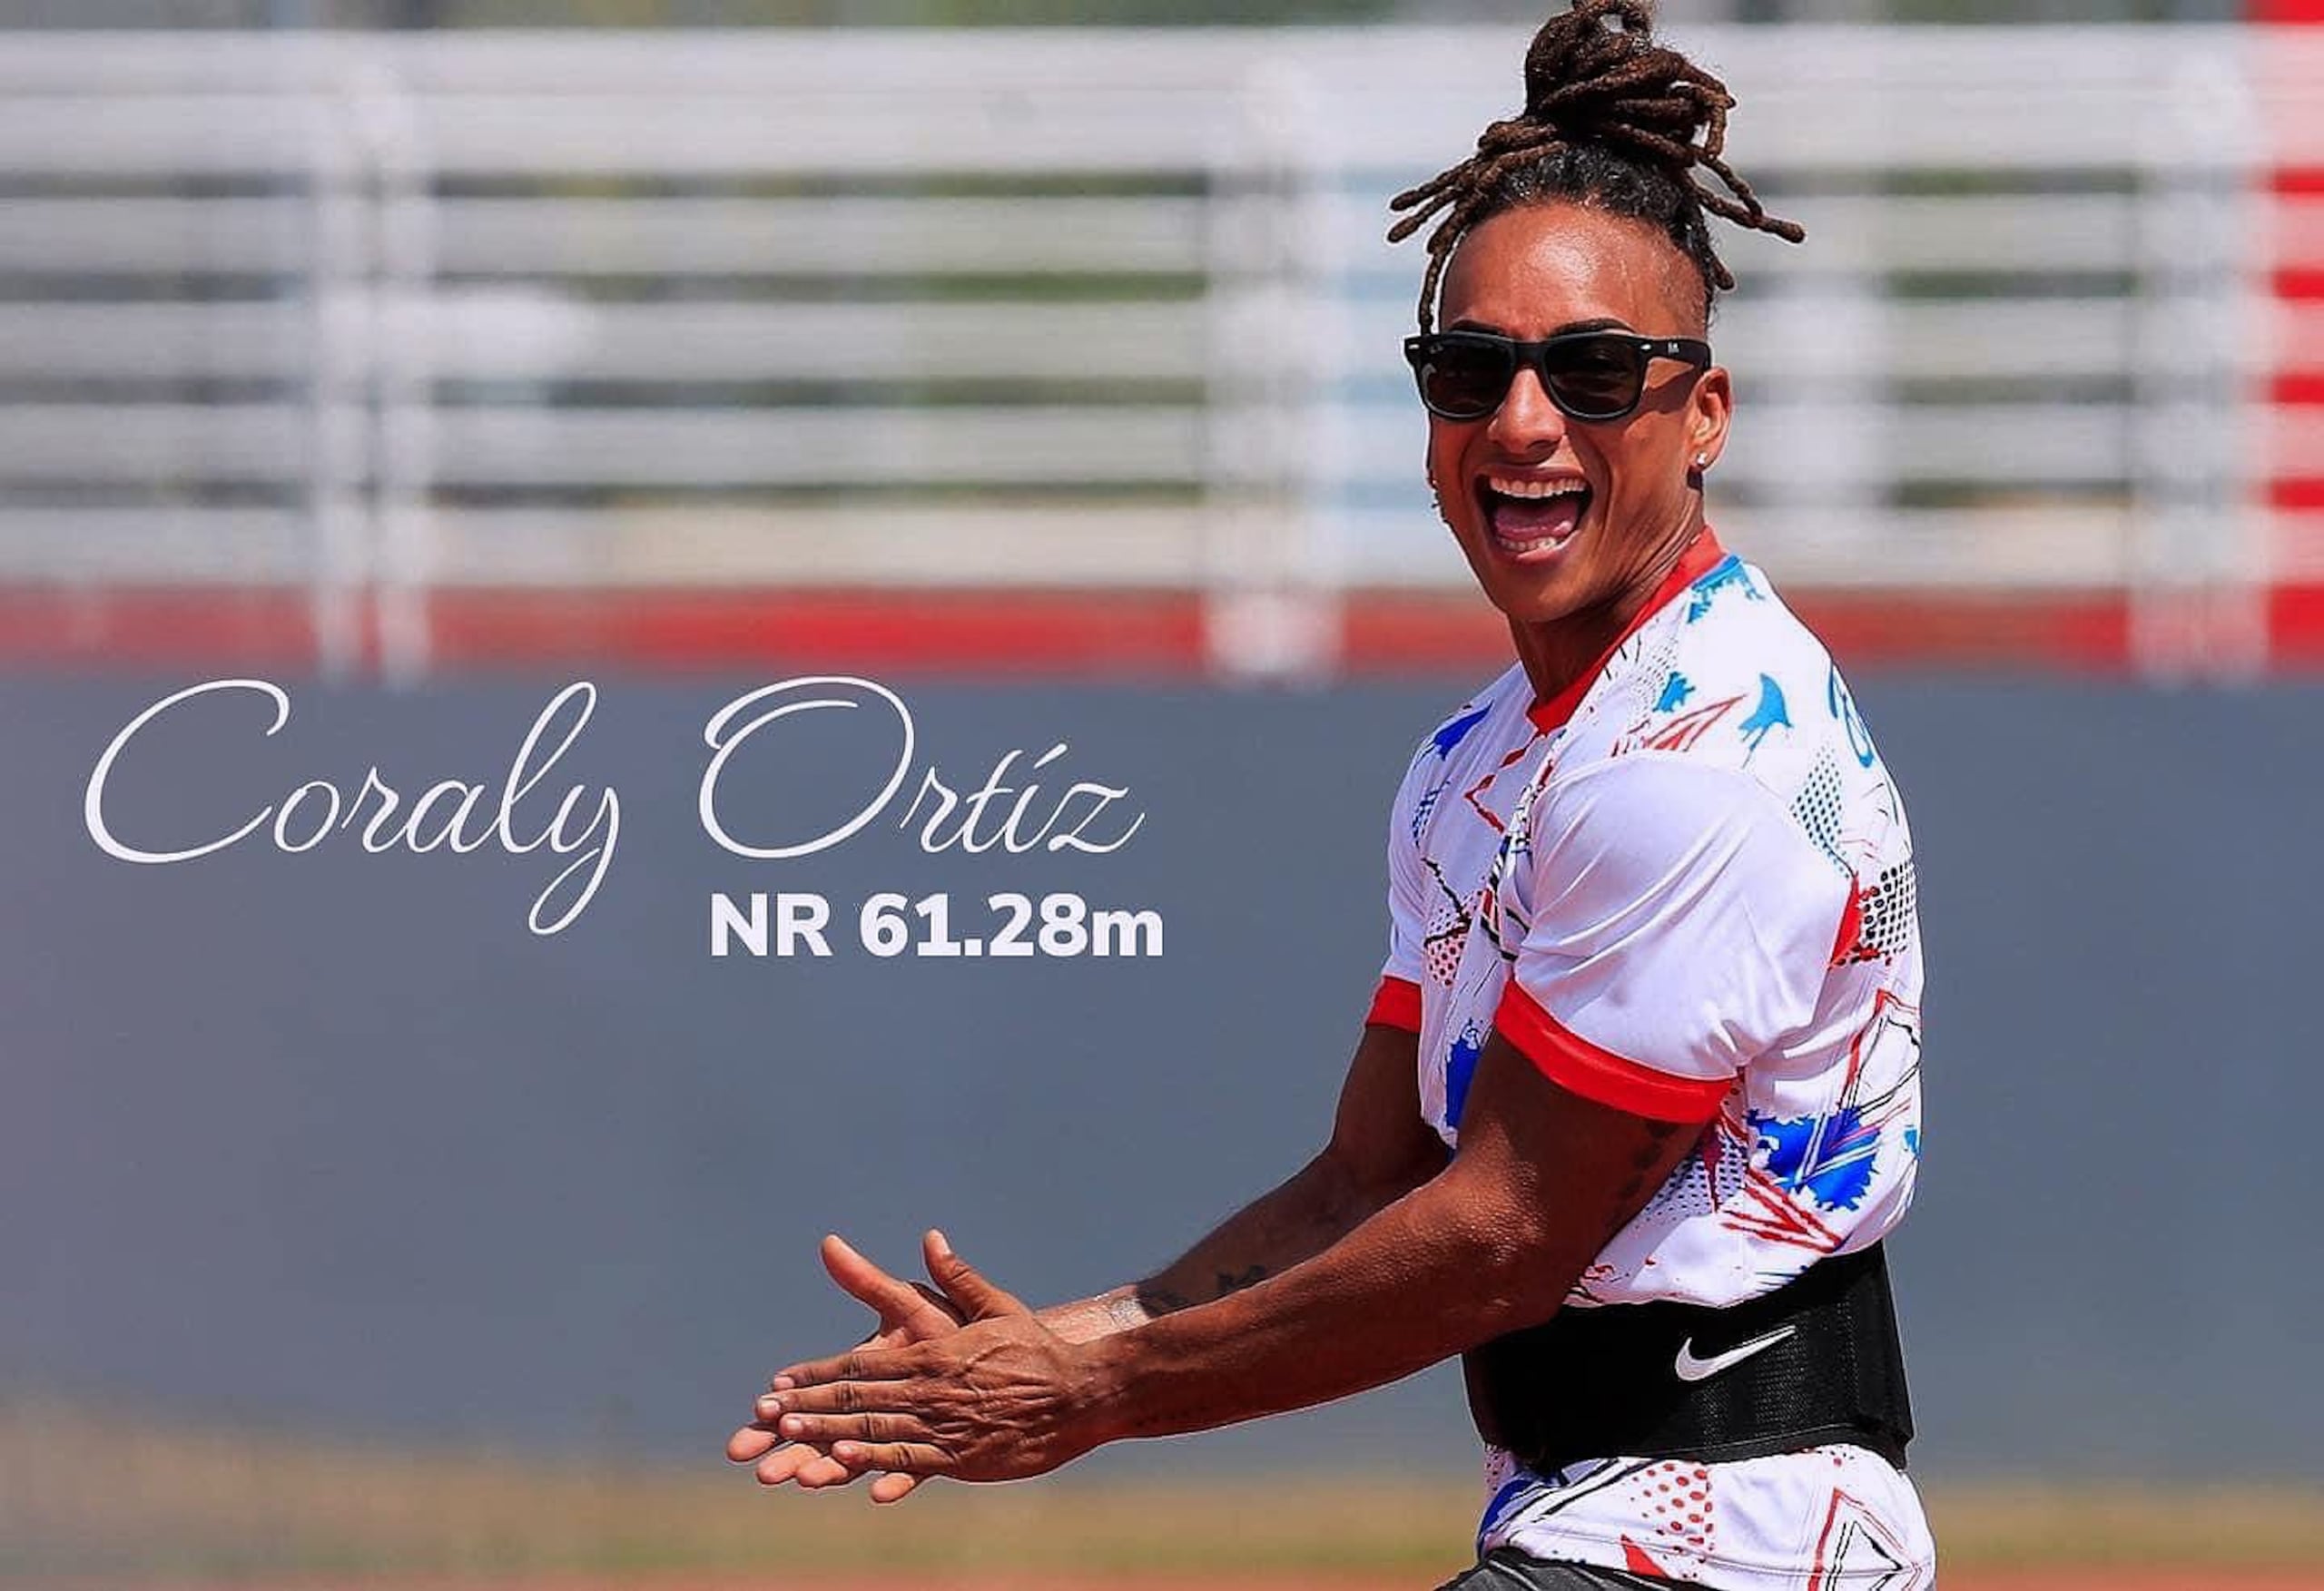 Esta foto de Coralys Ortiz fue antes a que reestableciera en 62.31  metros la marca nacional de jabalina durante su participación en el Campeonato Nacional en junio.